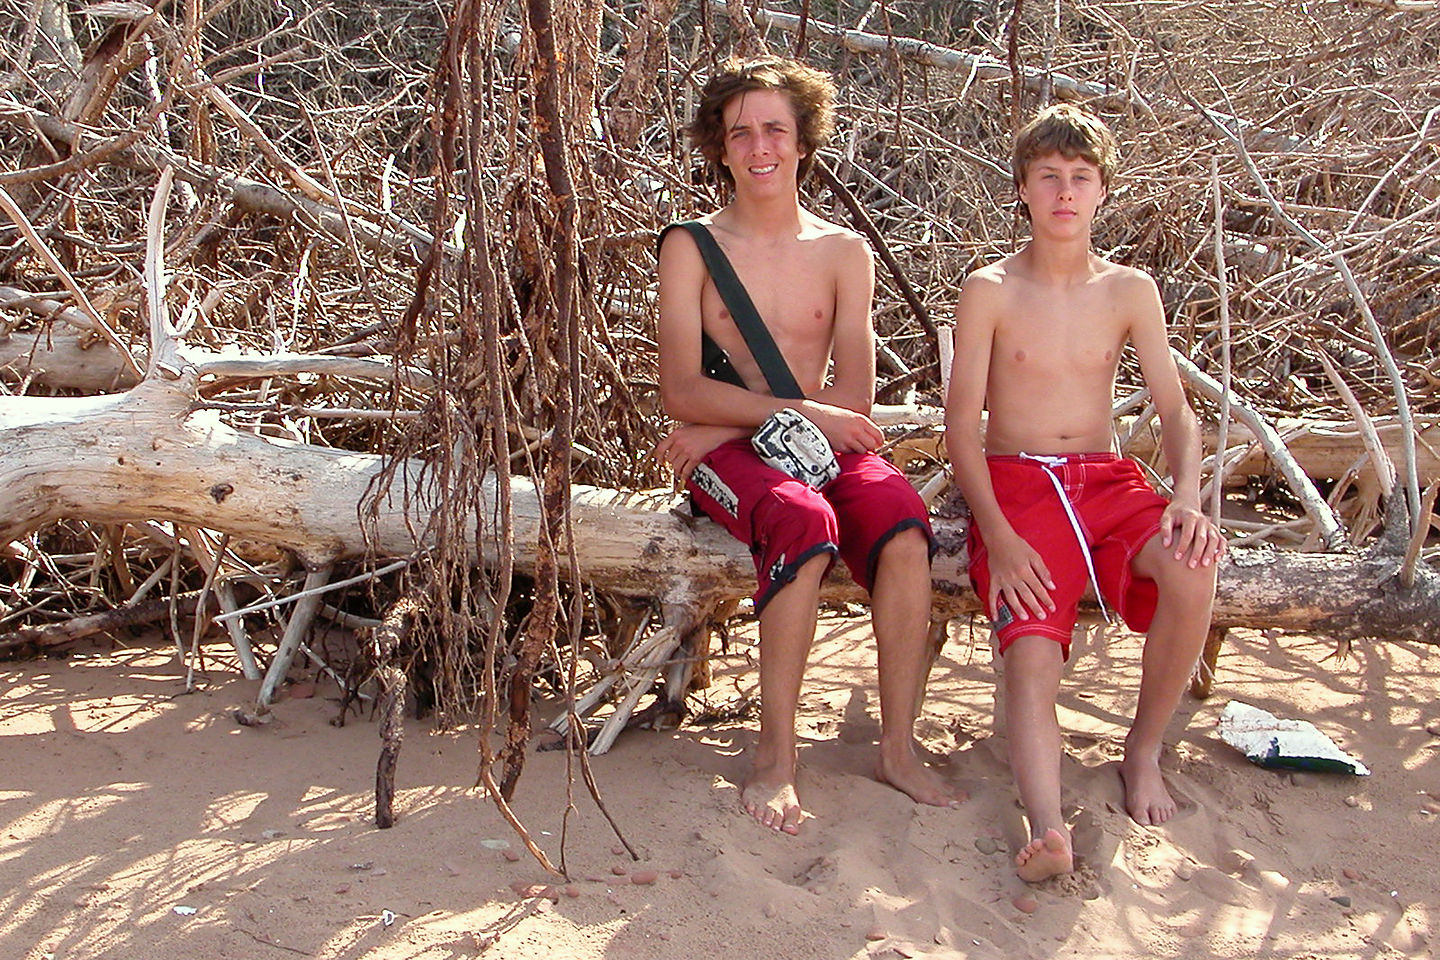 Boys on Rustico Bay Beach